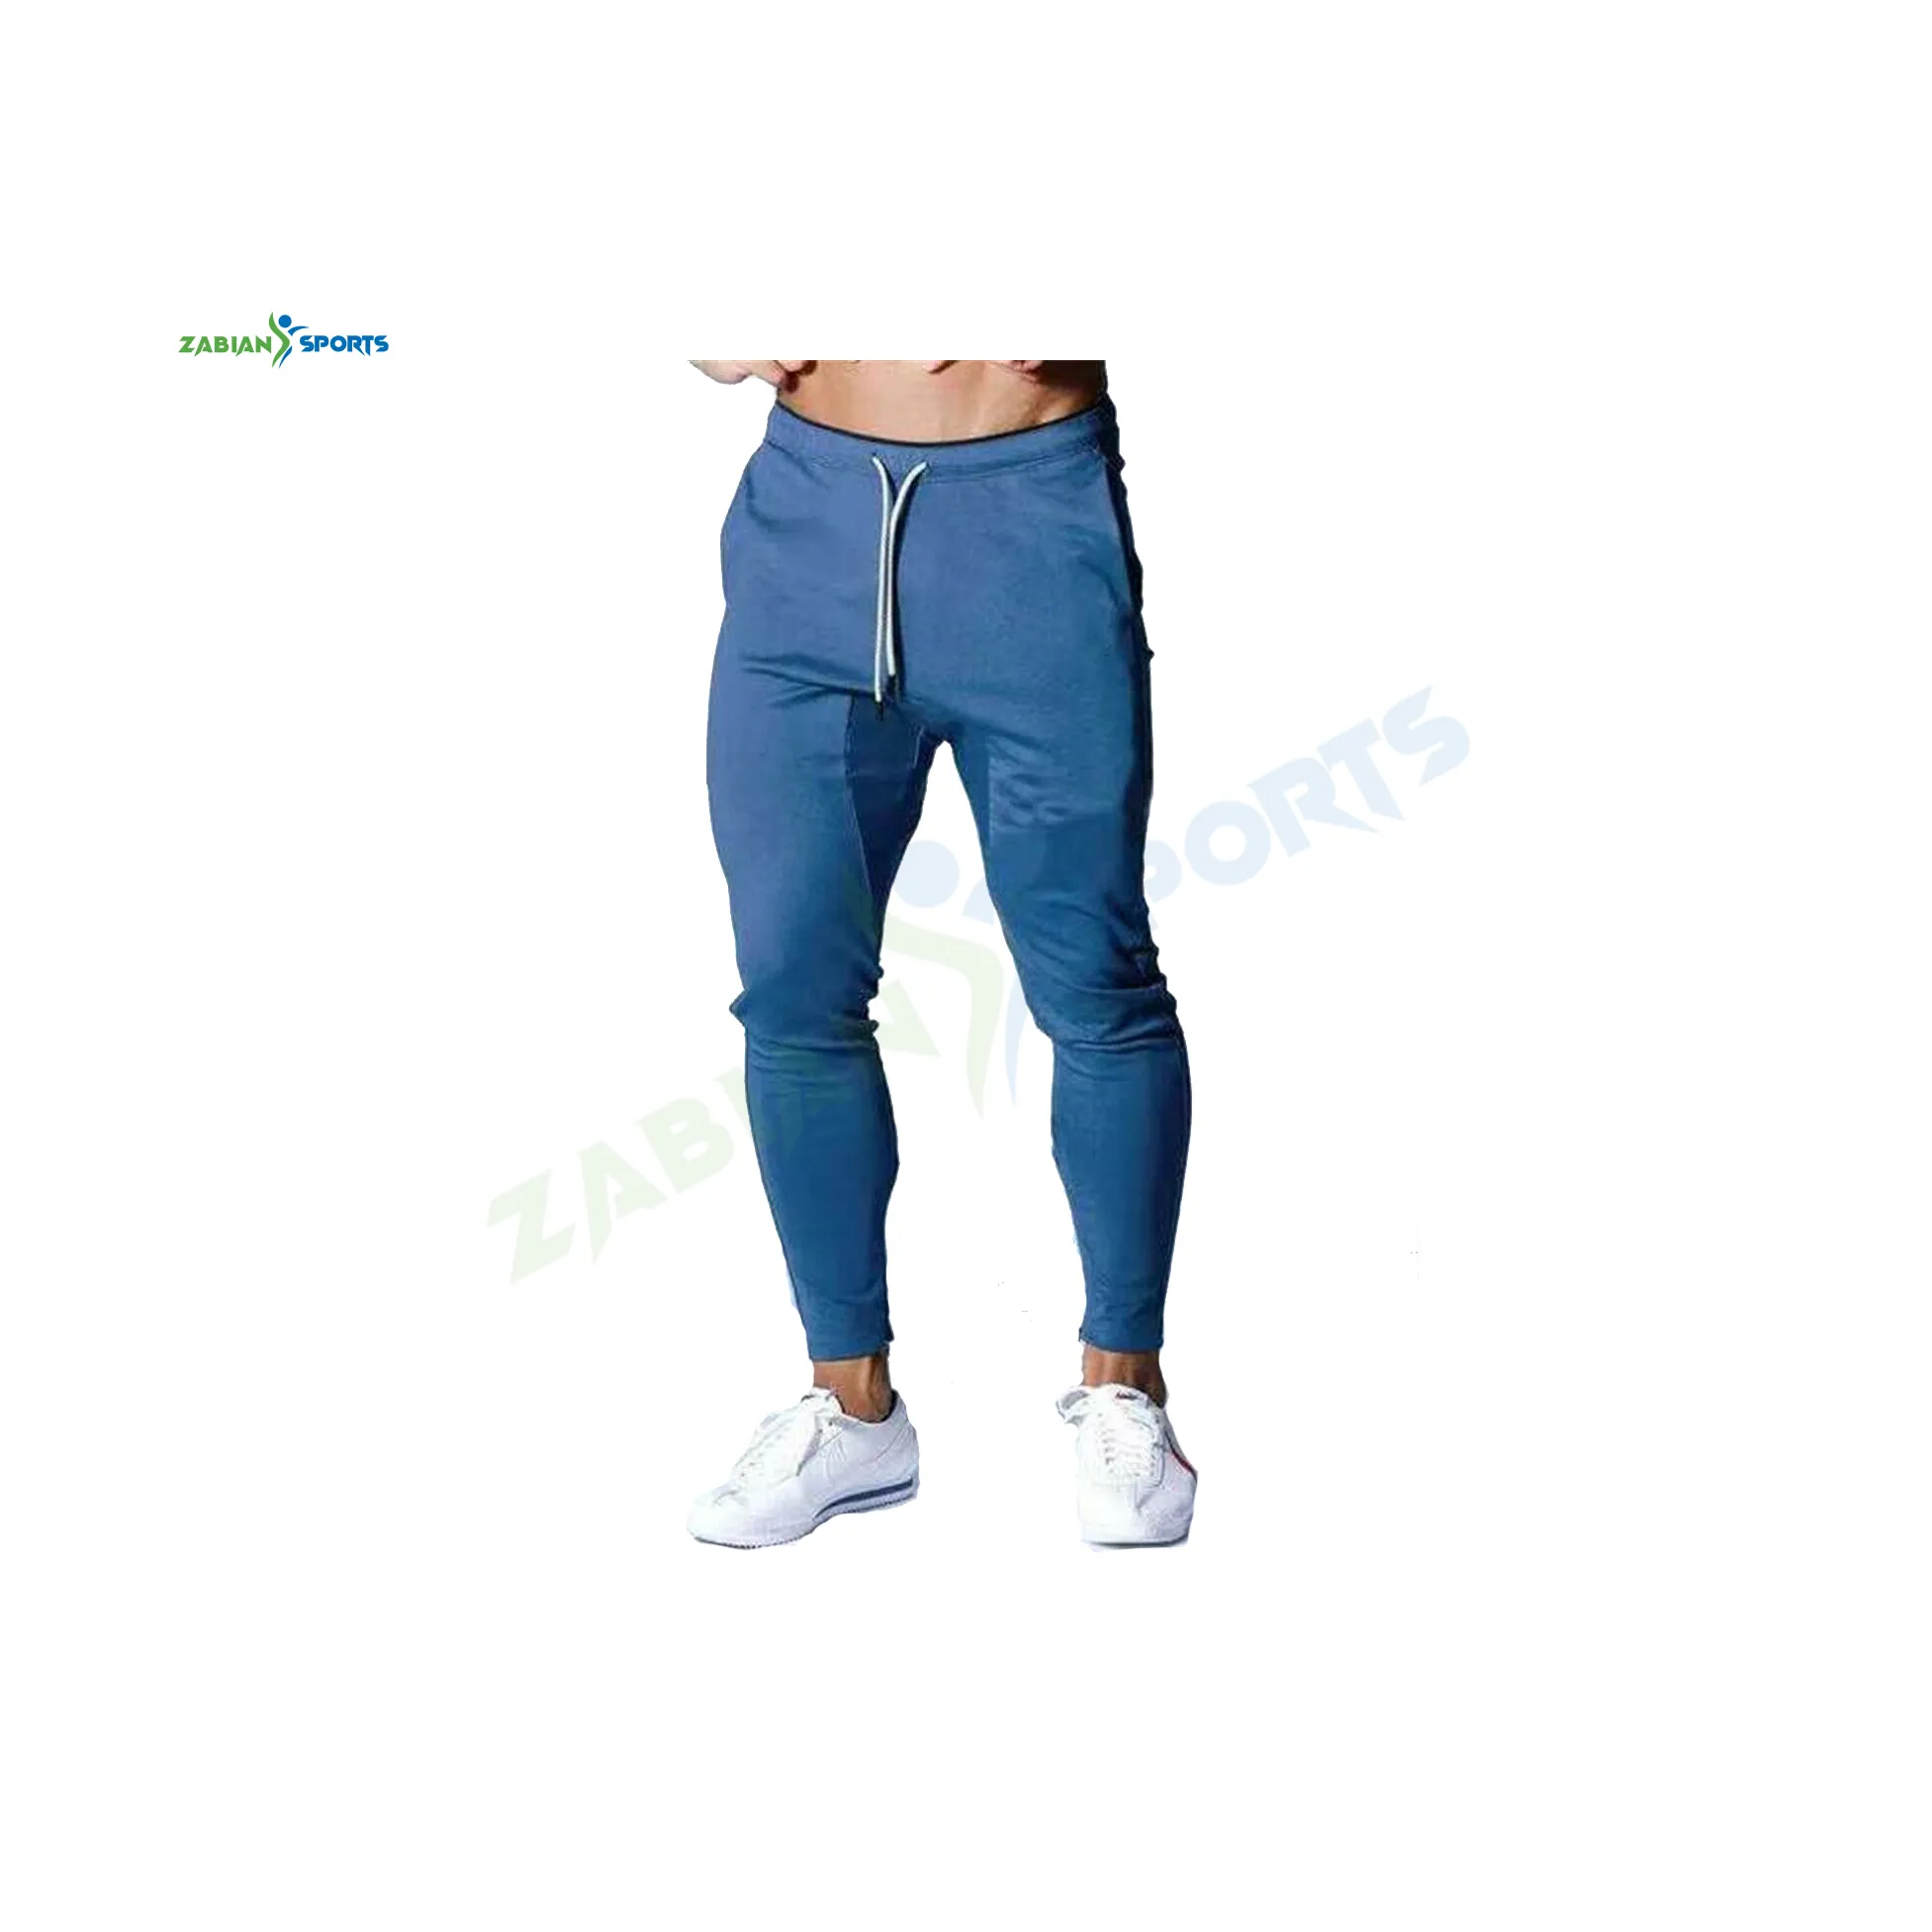 Atacado Fitness Cargo Jogging Pants Homens Elastic Pantalon Calças Personalizadas Correndo Em Branco Joggers Track Cargo Pants Para Homens